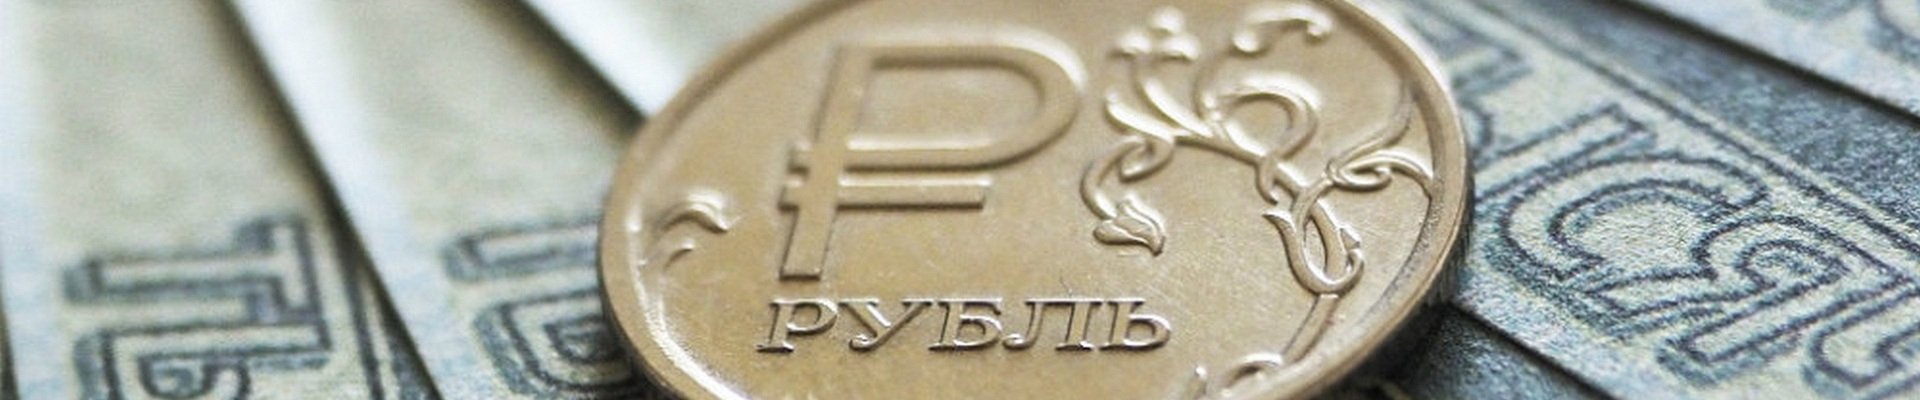 Аналитики выяснили сколько российские граждане готовы отдавать на ежемесячные кредитные платежи